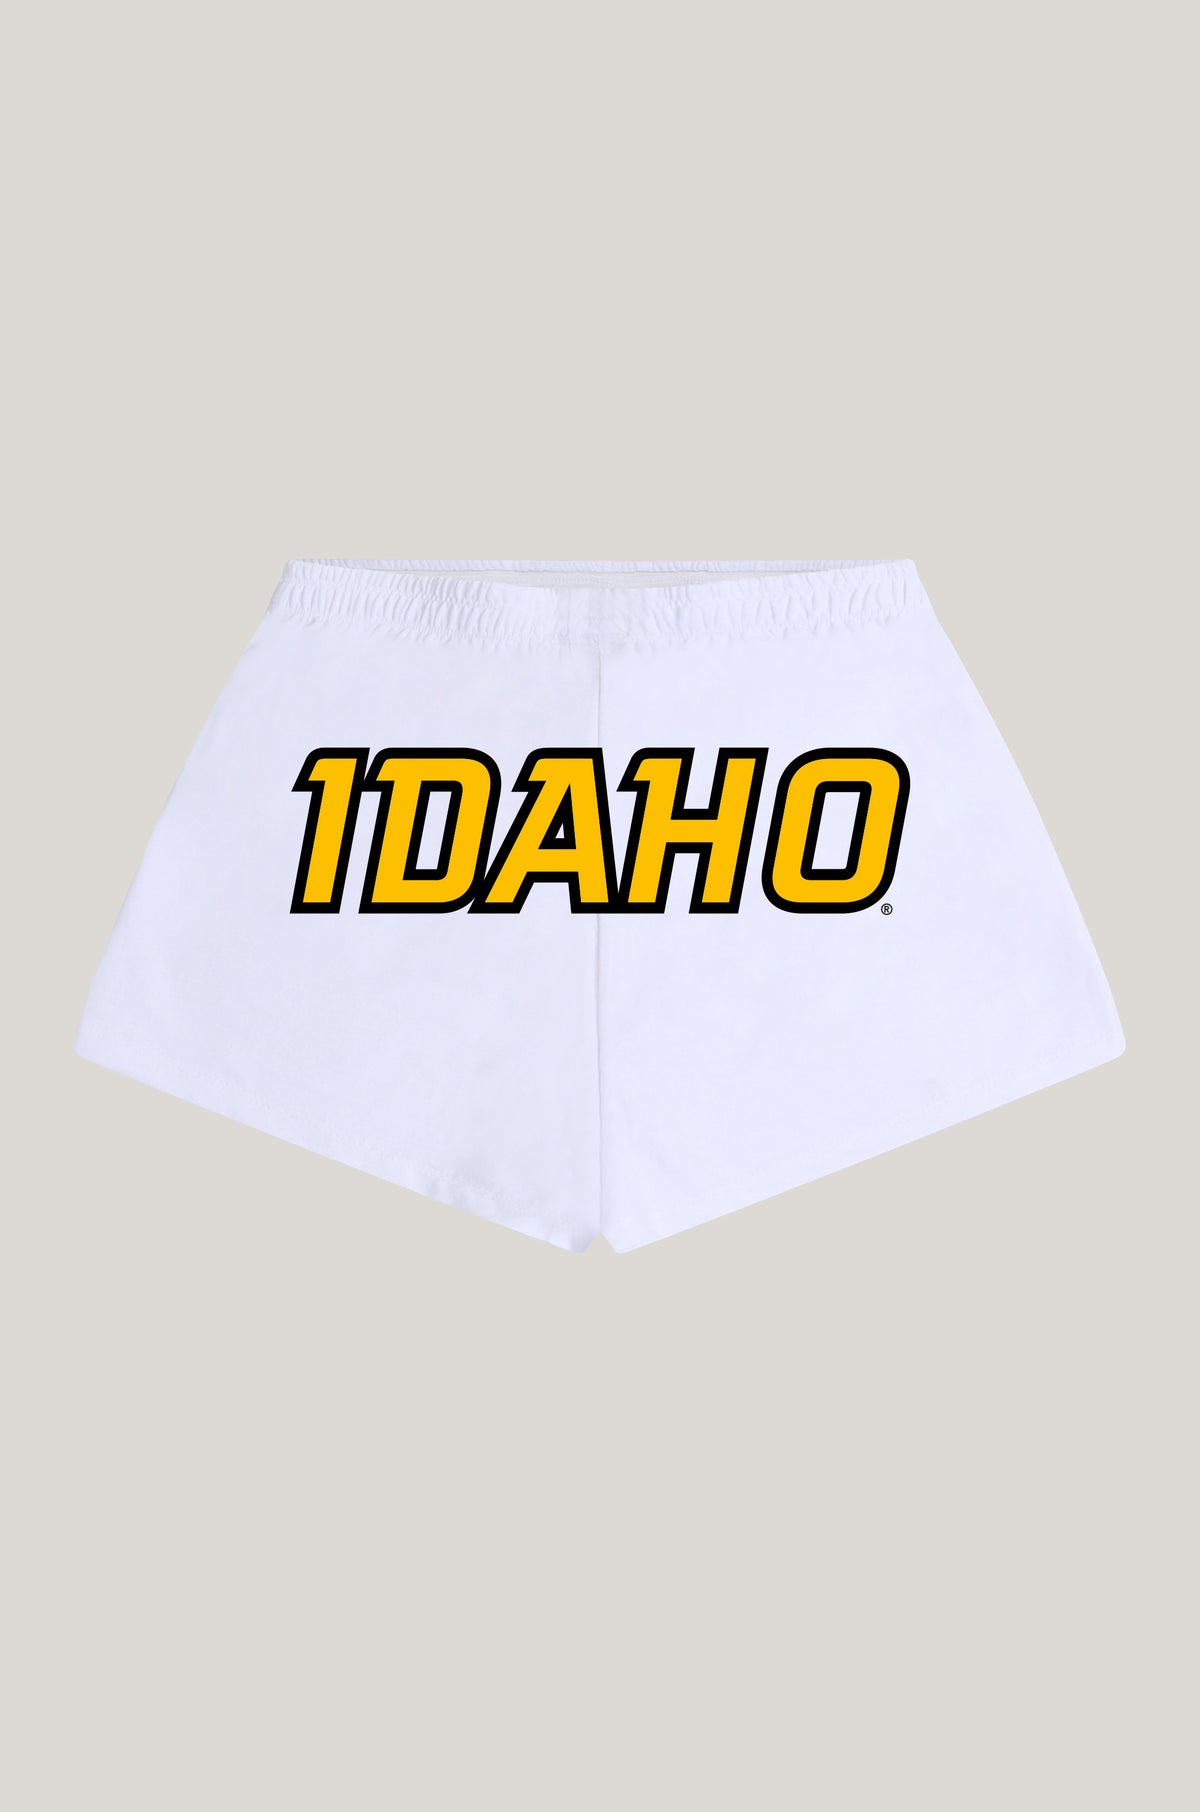 Idaho P.E. Shorts